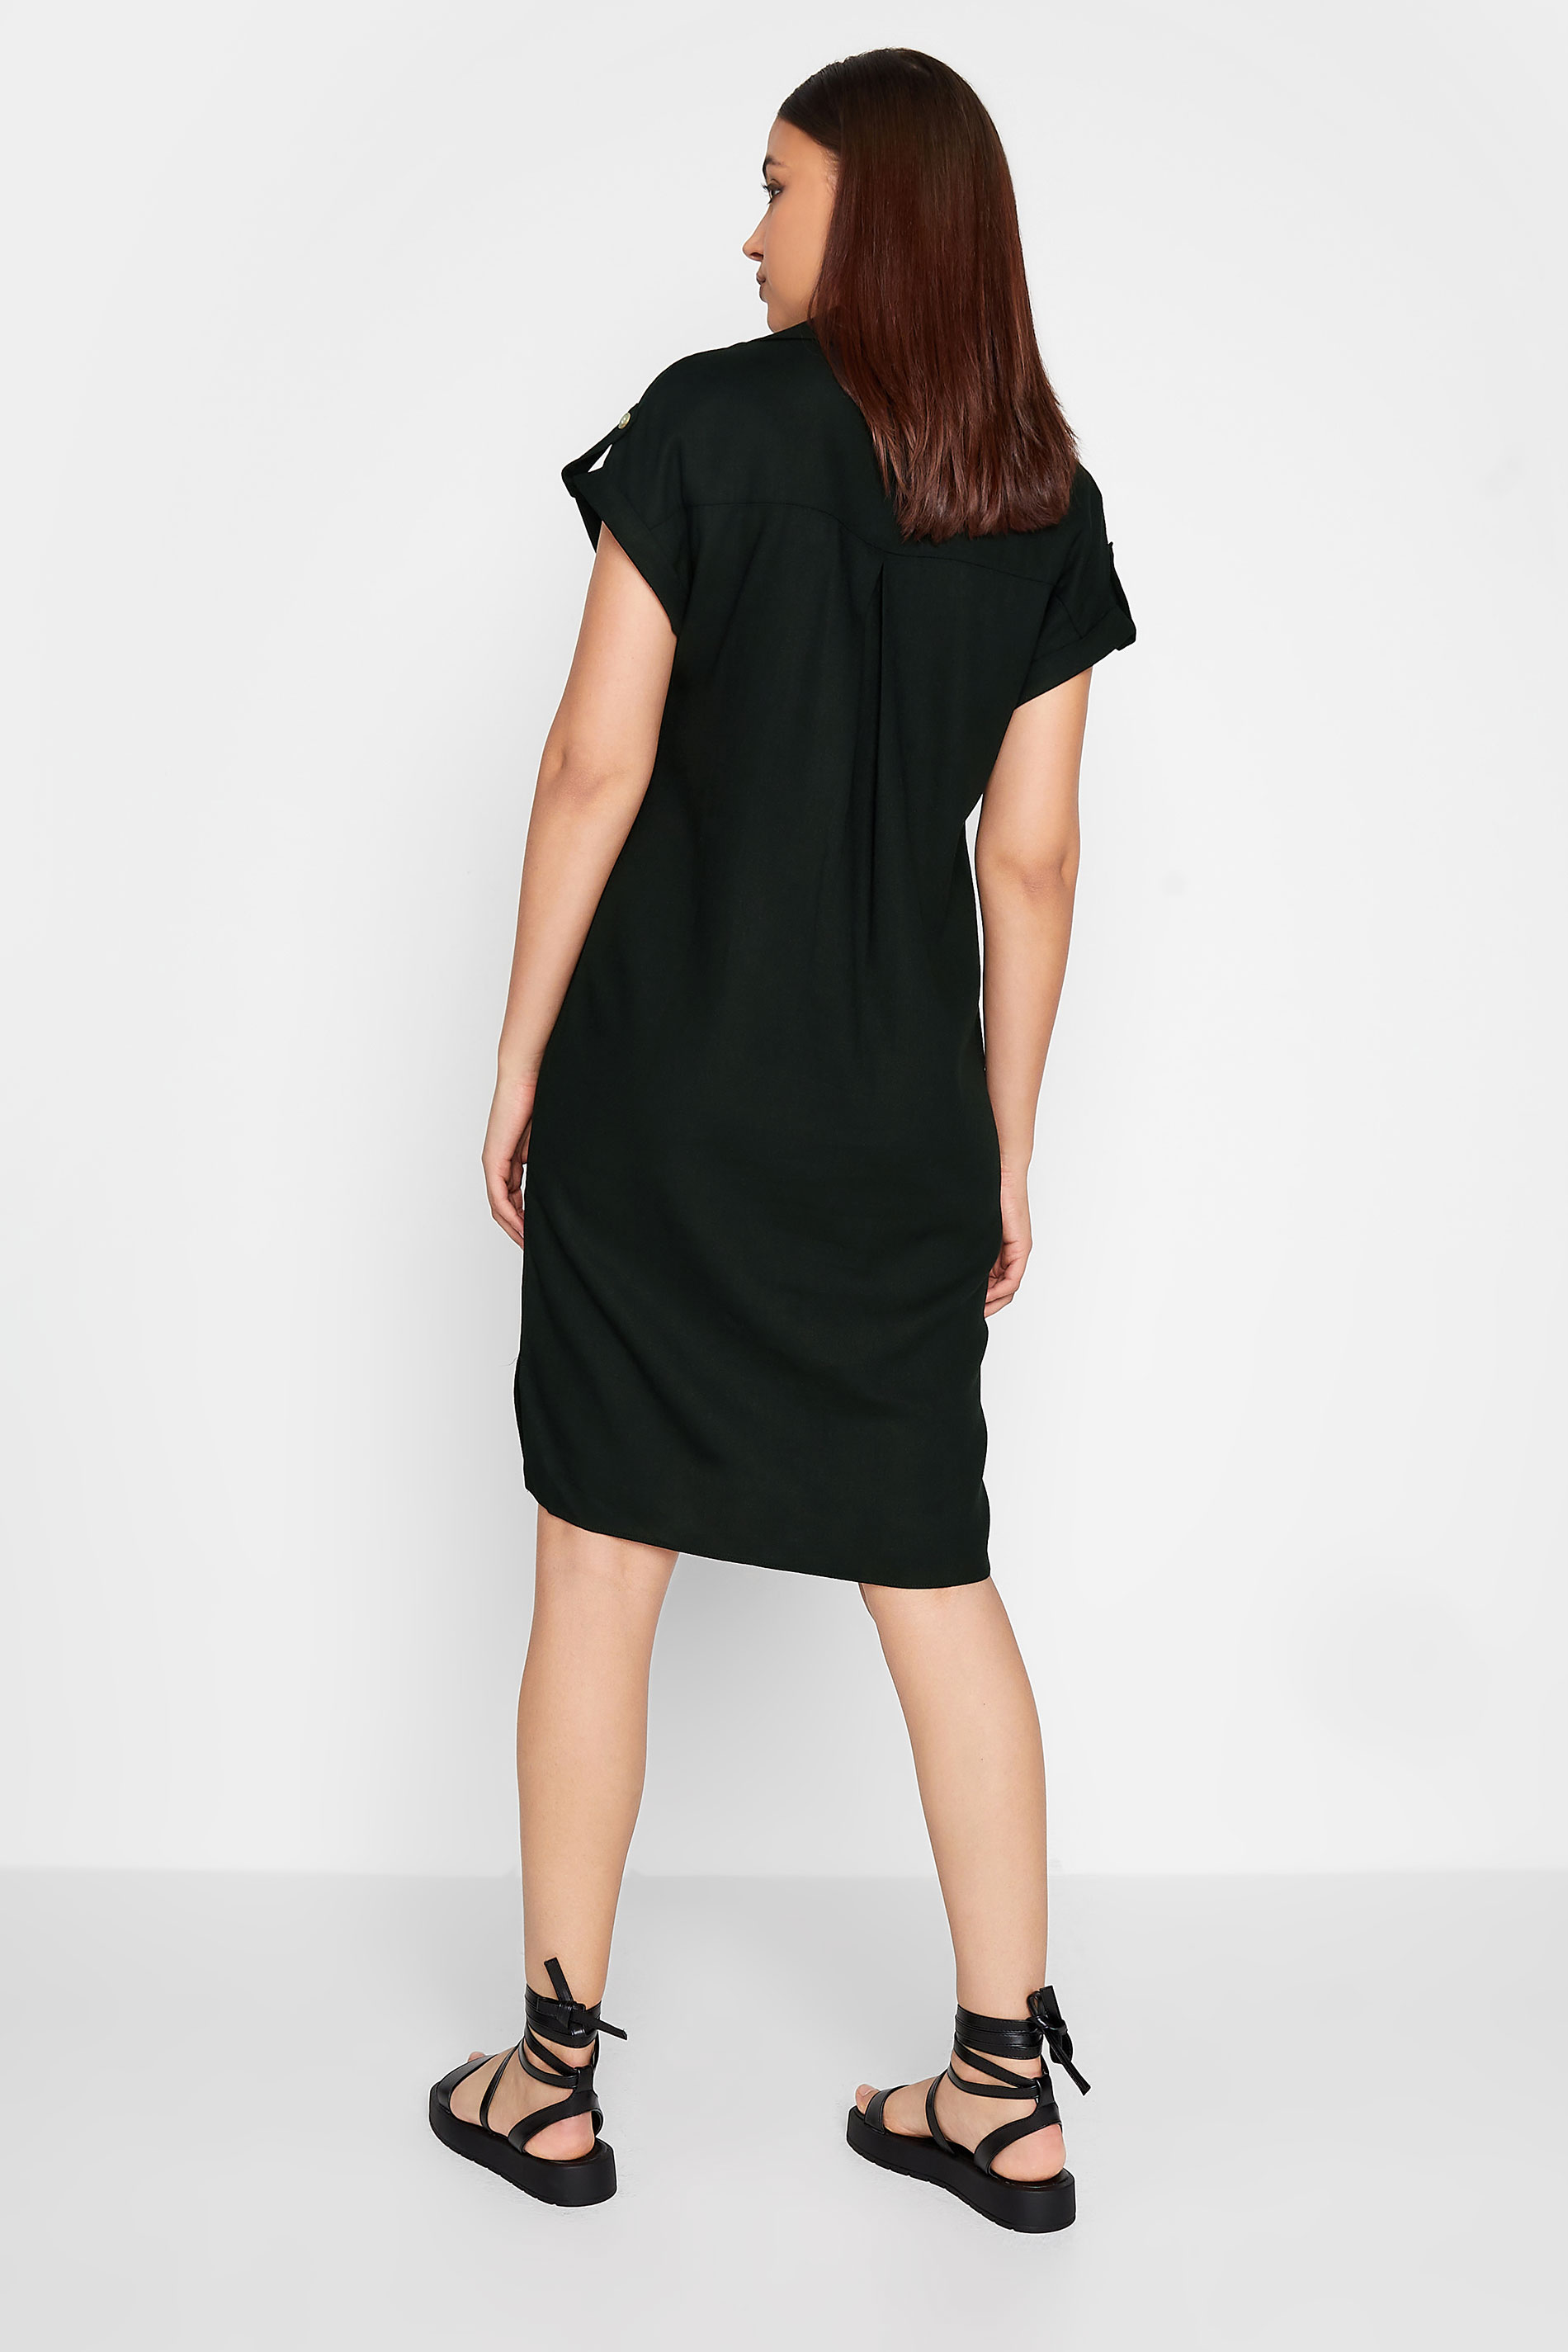 LTS Tall Women's Black Linen Look Button Through Shirt Dress | Long Tall Sally  3